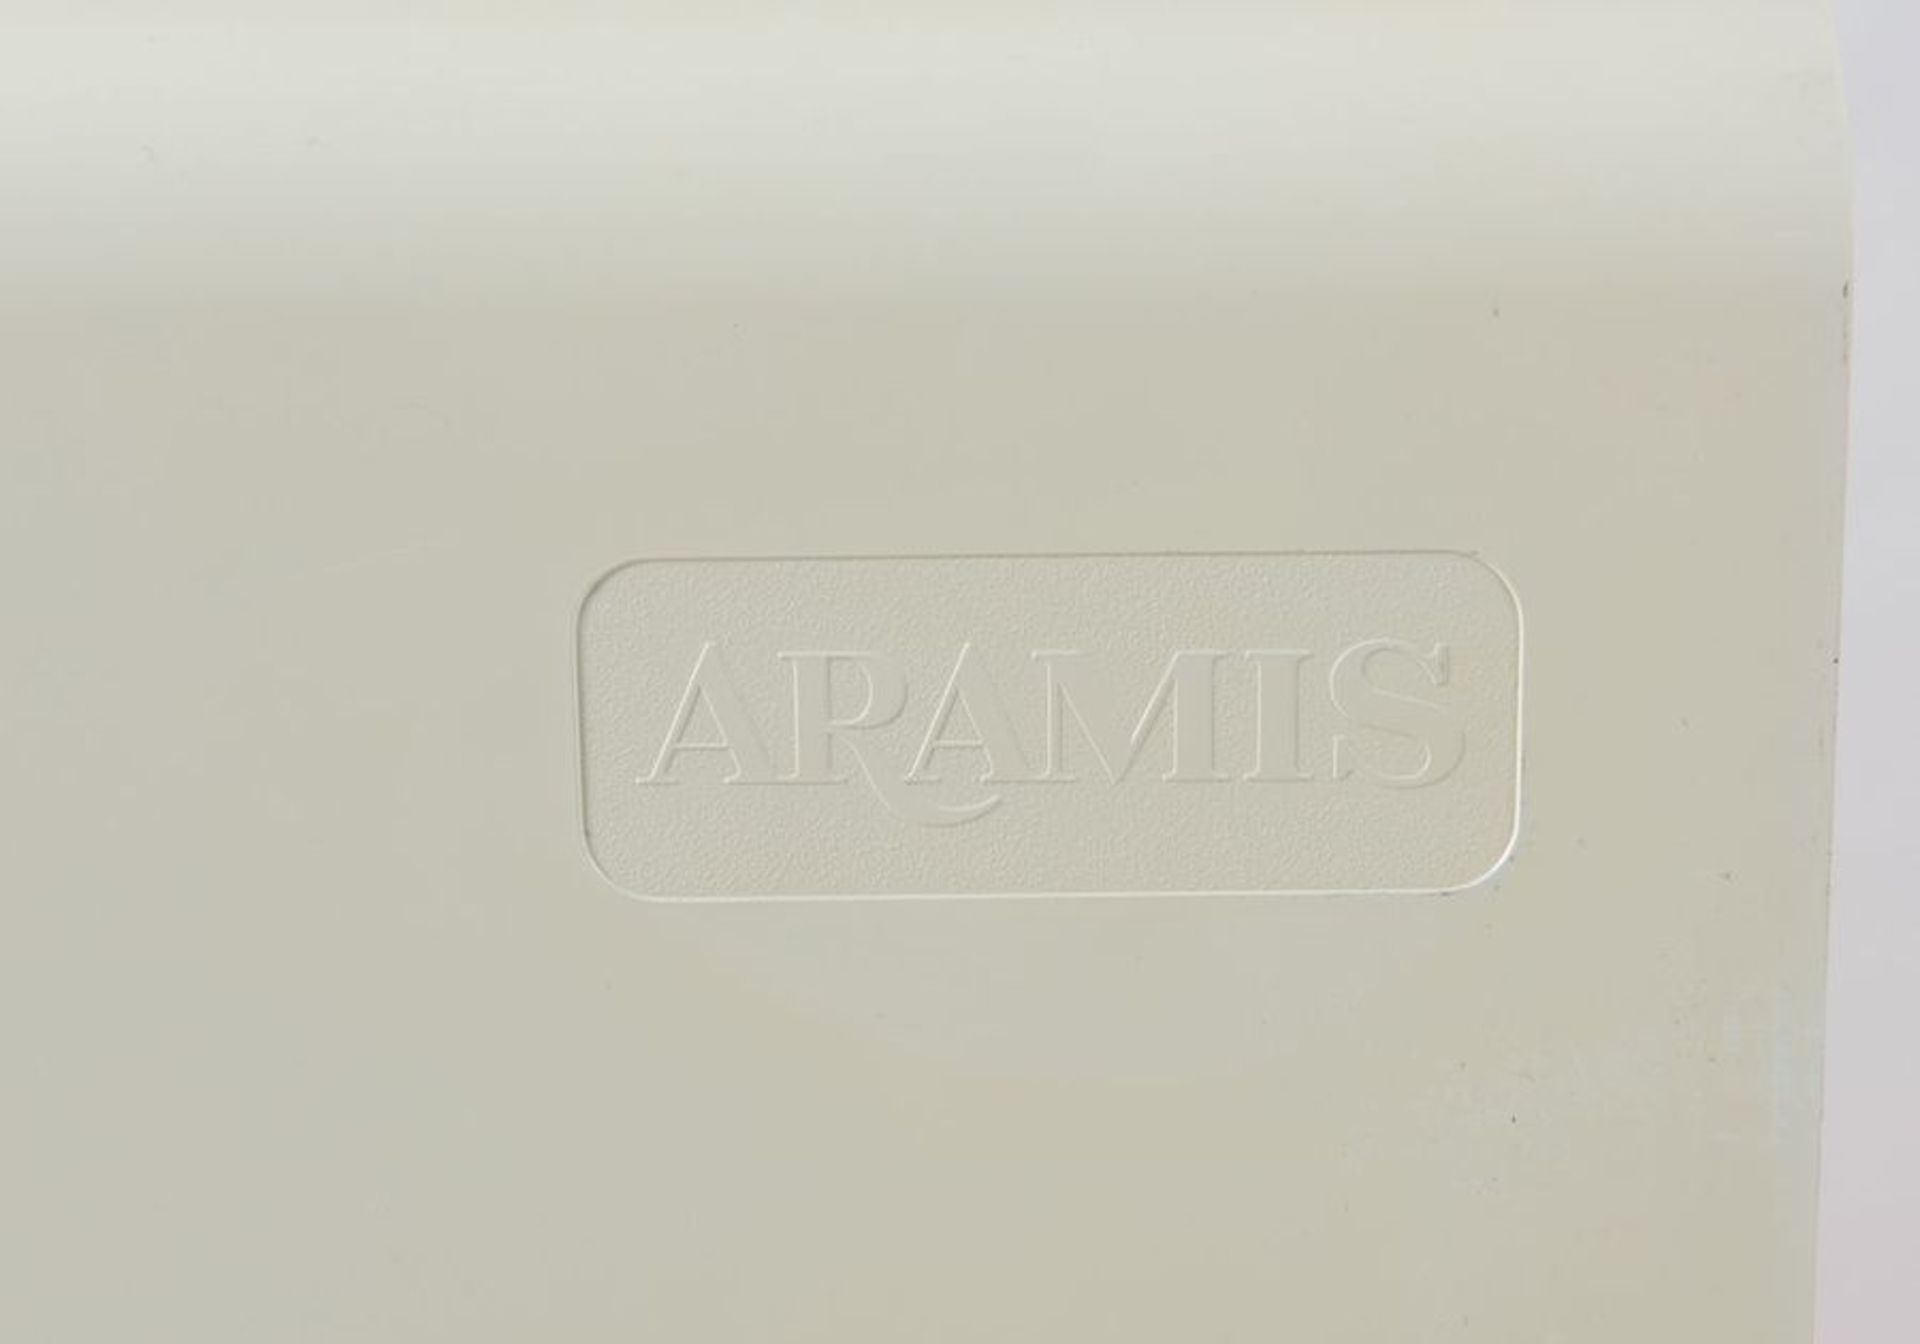 ARAMIS Otto portariviste in plastica ABS ad incastro. Marchio originale. Prod. Italia, 1970 ca. Cm 3 - Bild 3 aus 3